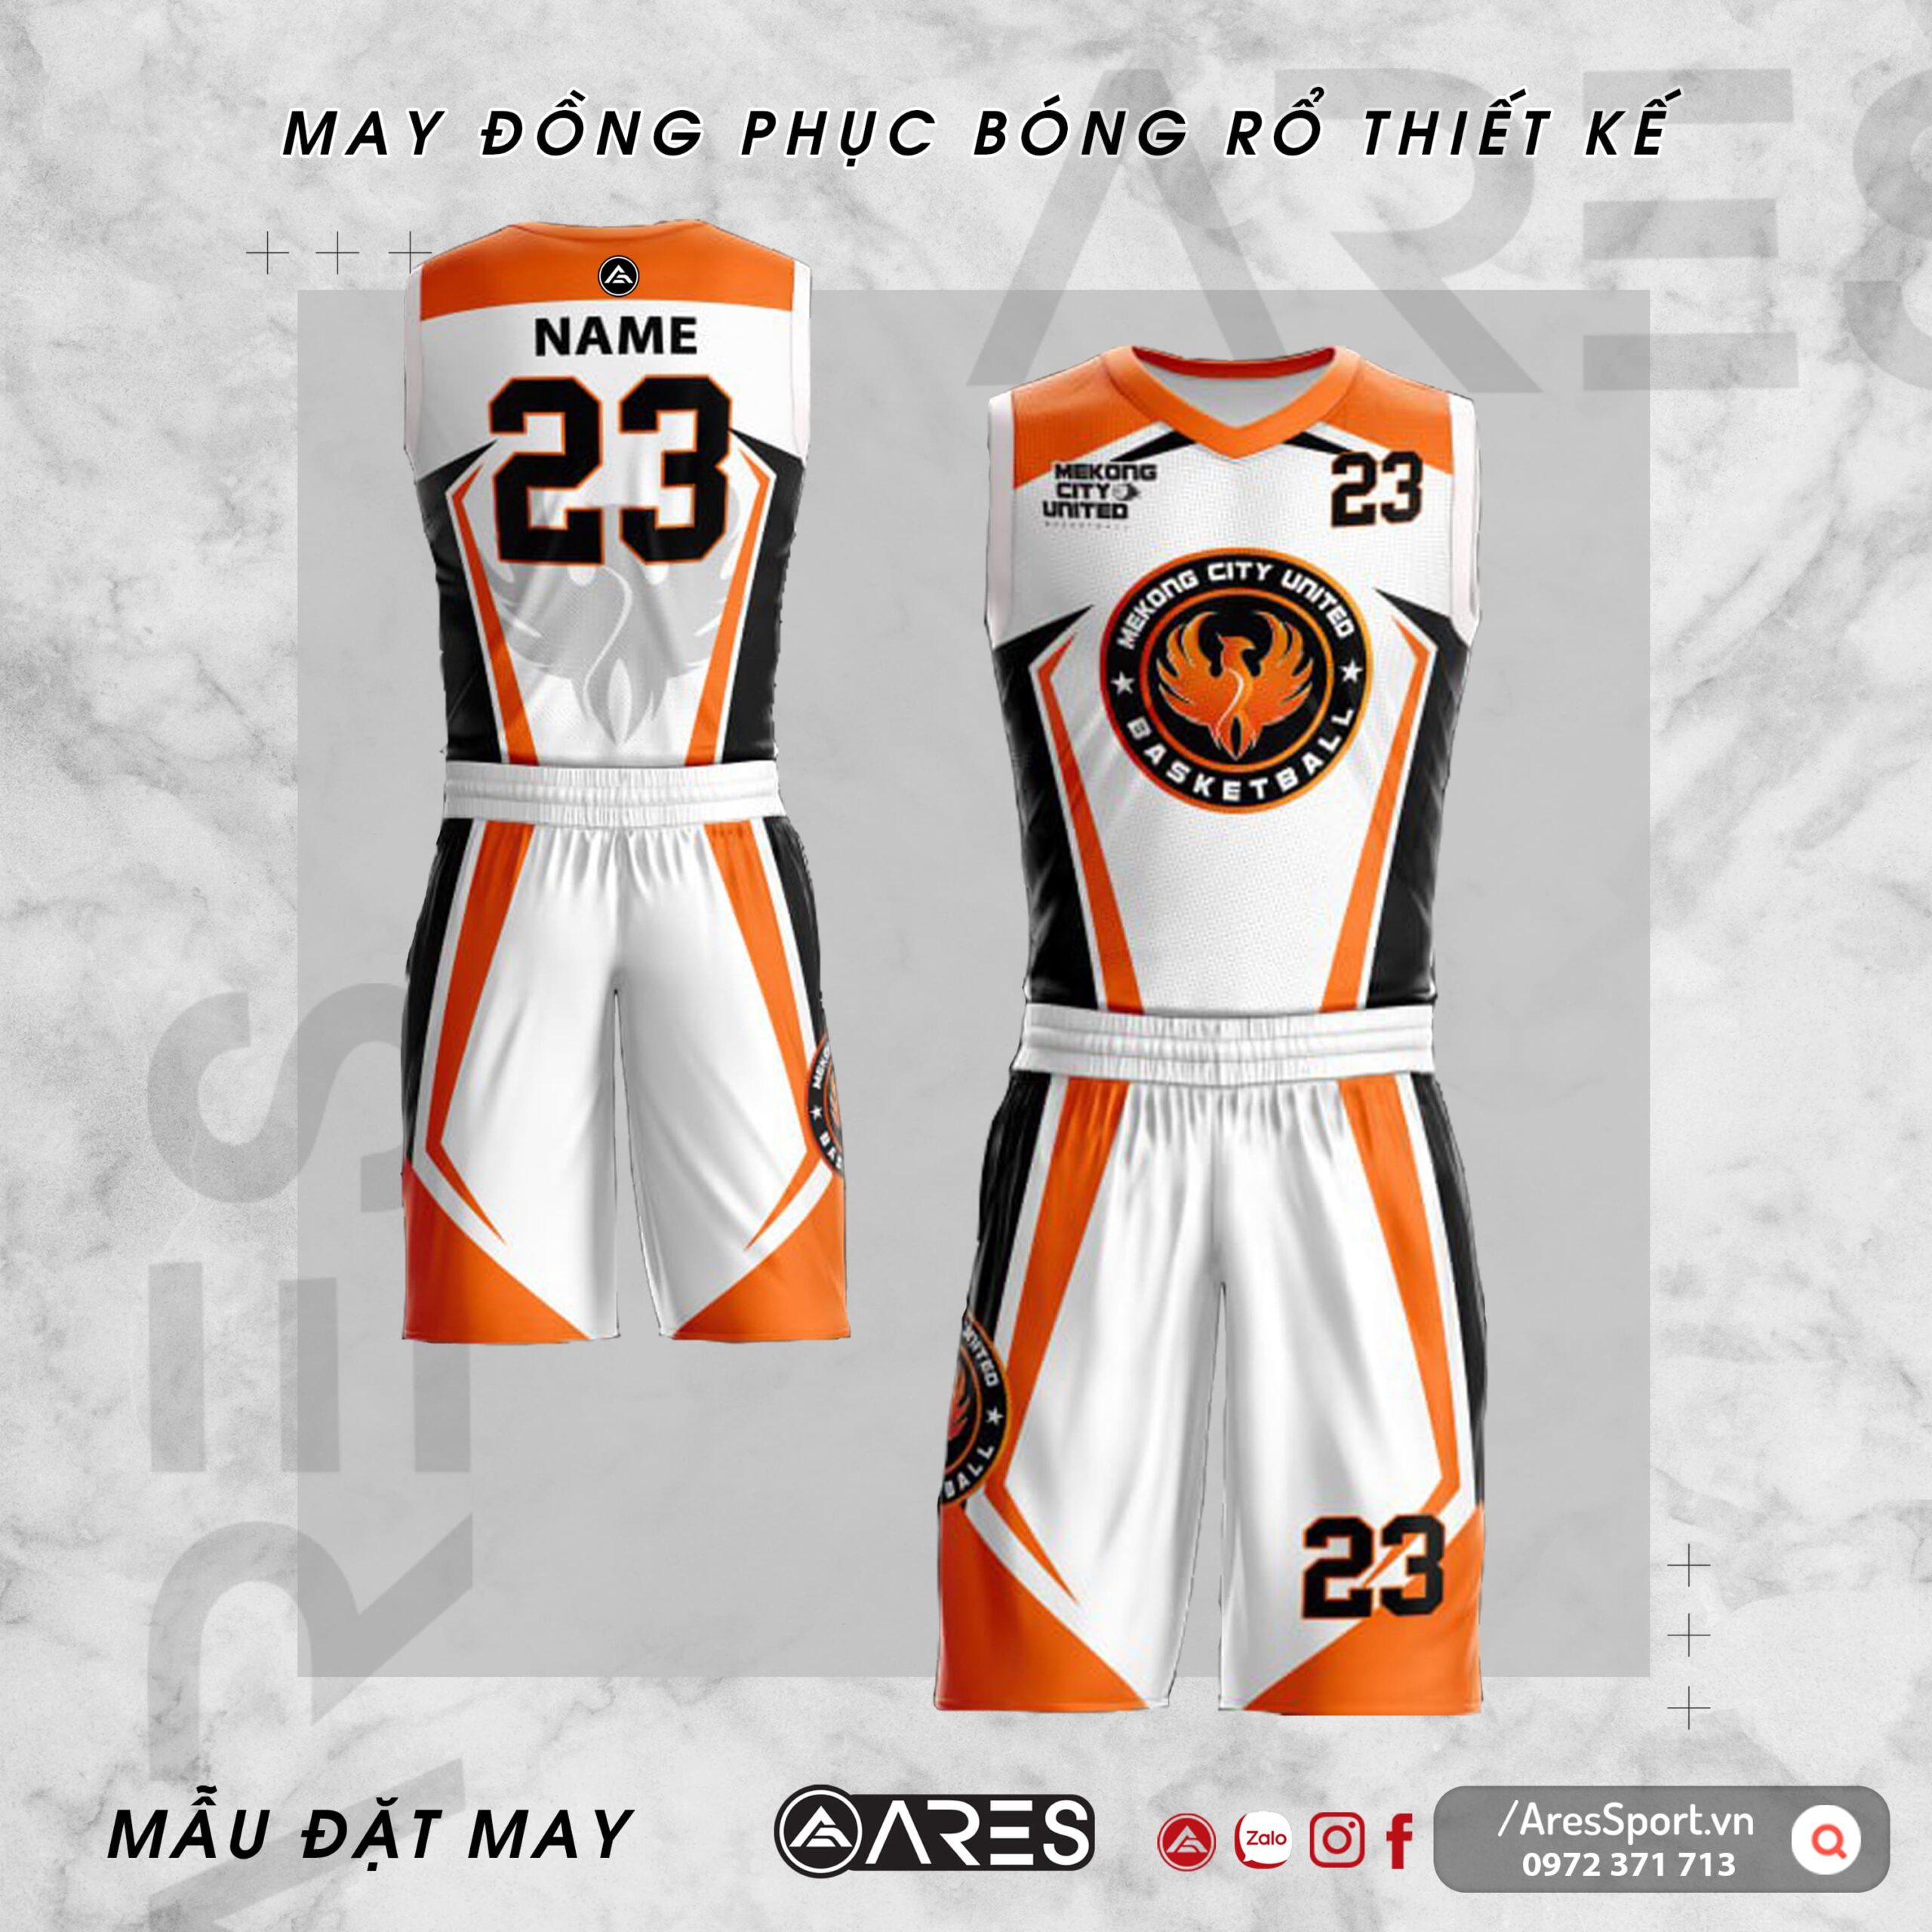 Đồng phục bóng rổ thiết kế Mekong City United trắng cam họa tiết mạnh mẽ